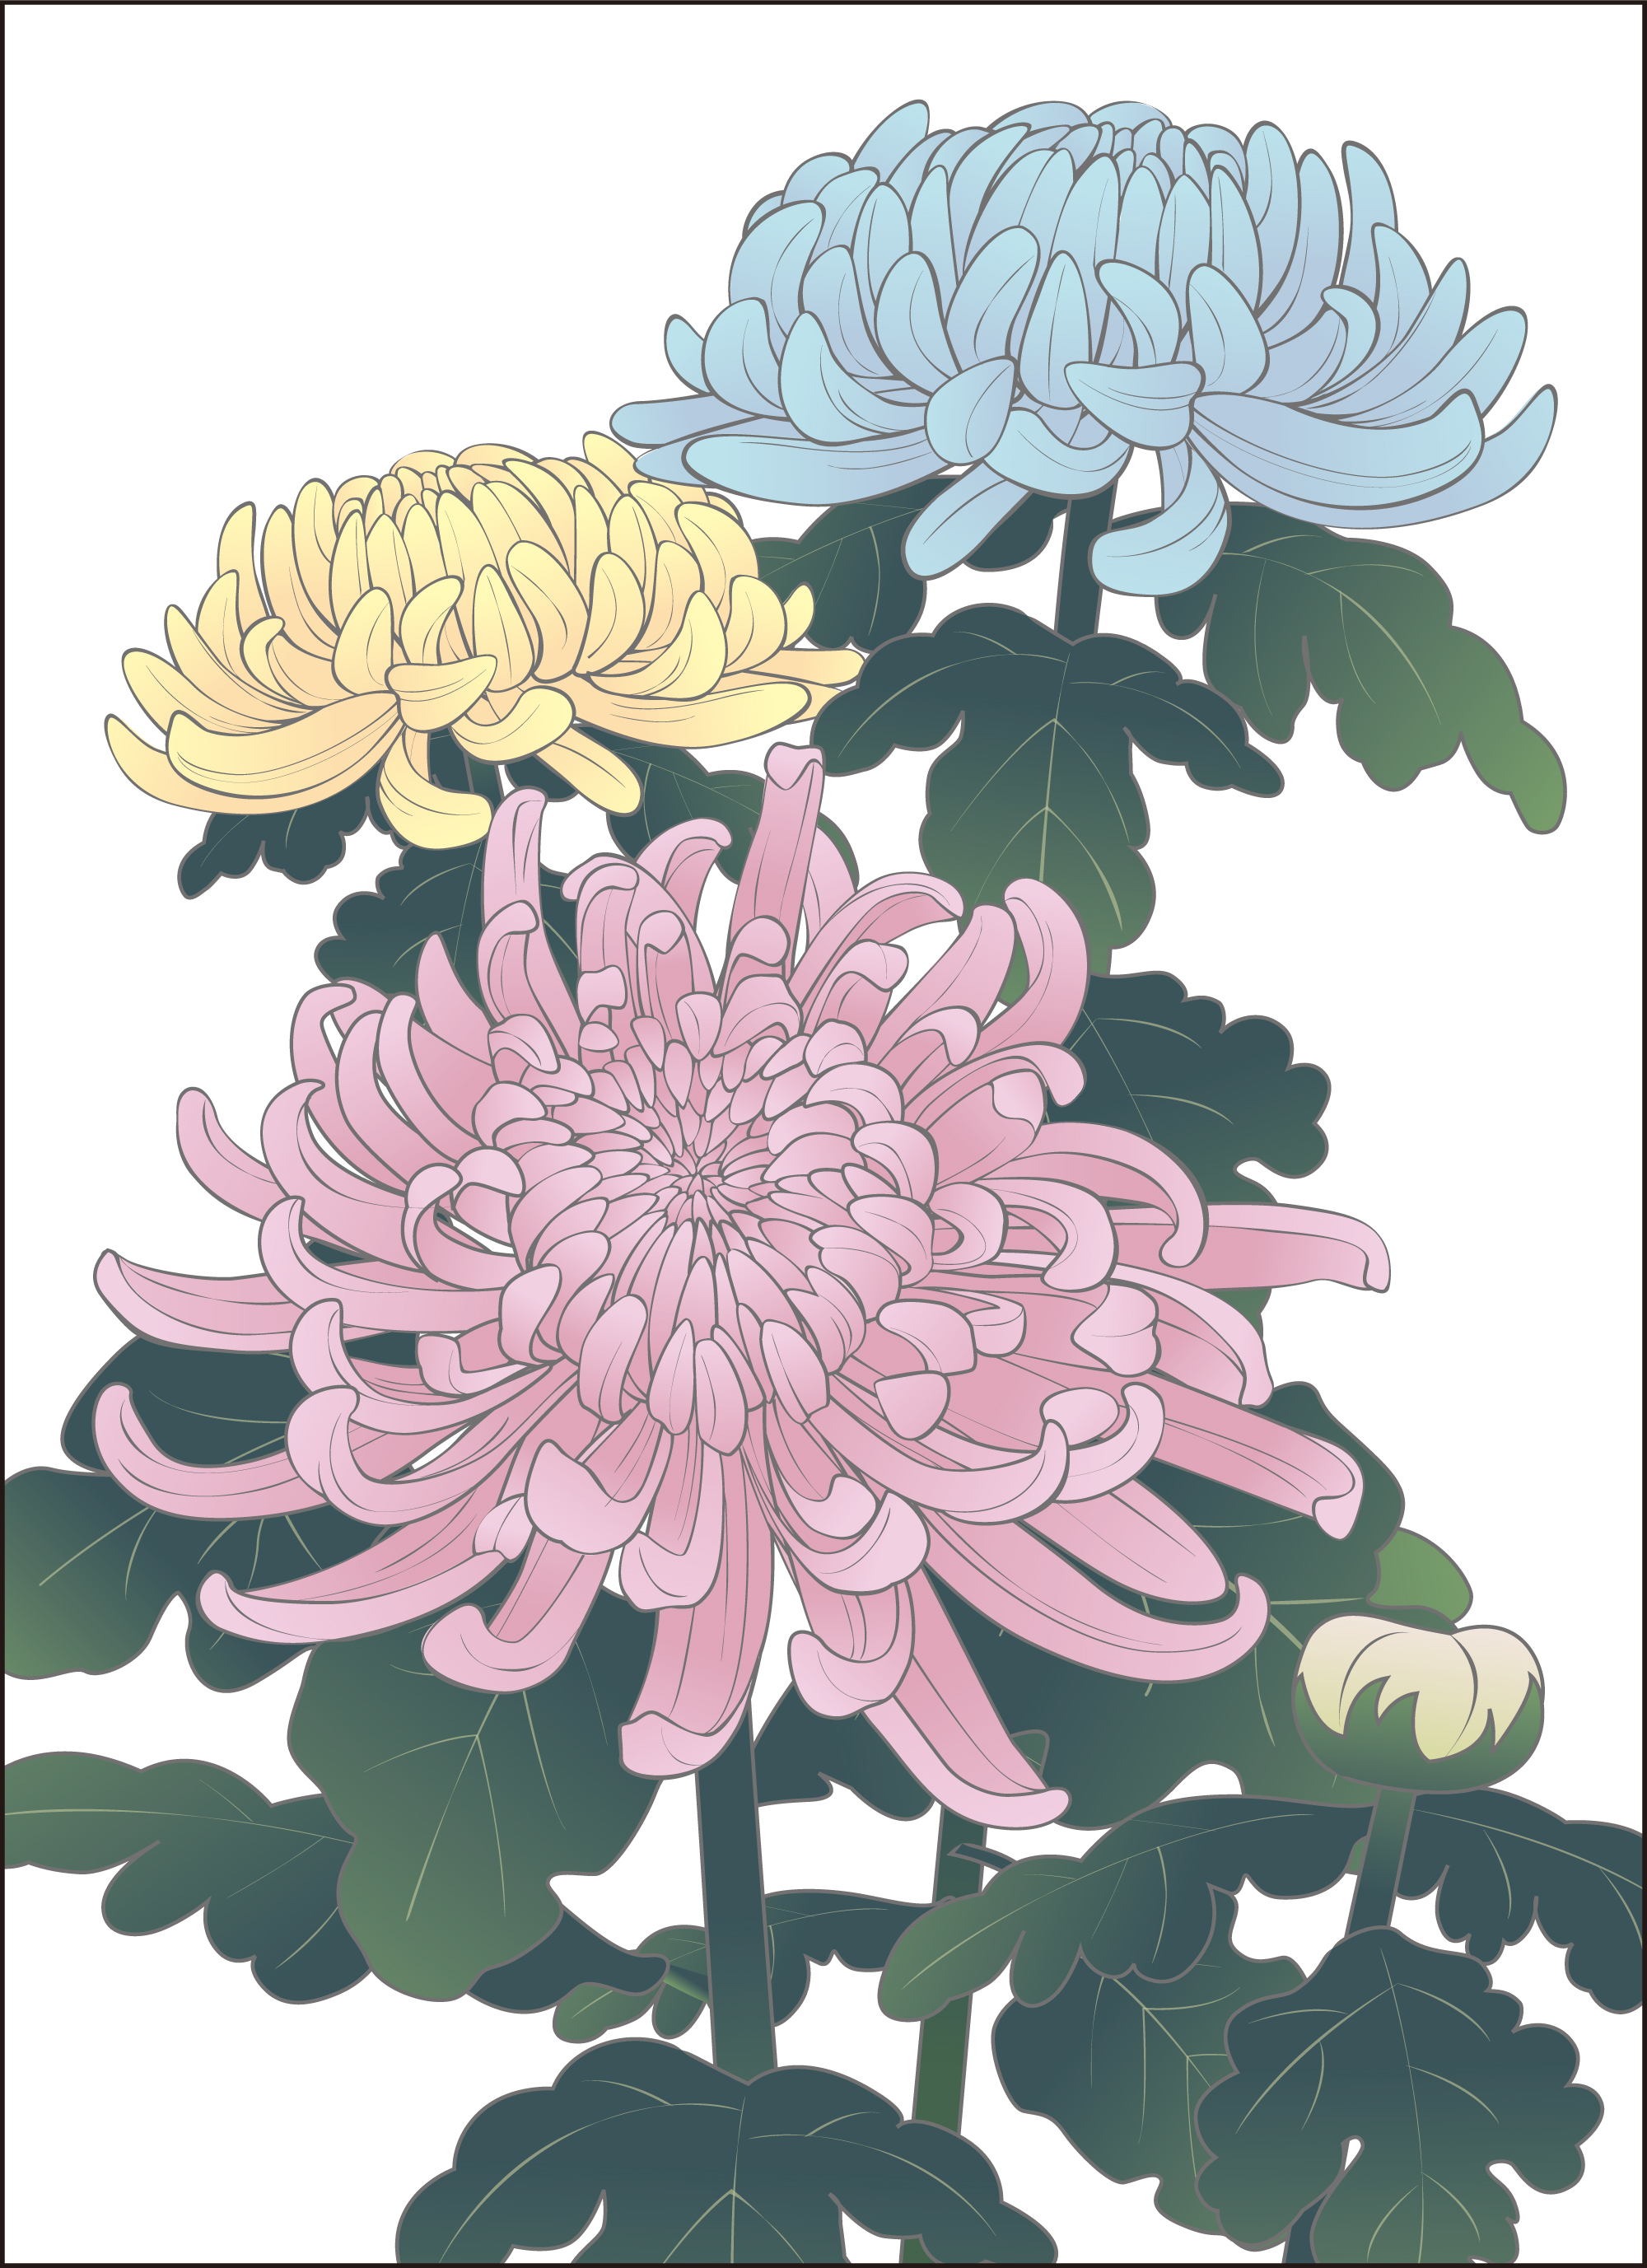 菊 イラスト かわいいかわいい 菊 イラスト 簡単 イラスト画像集